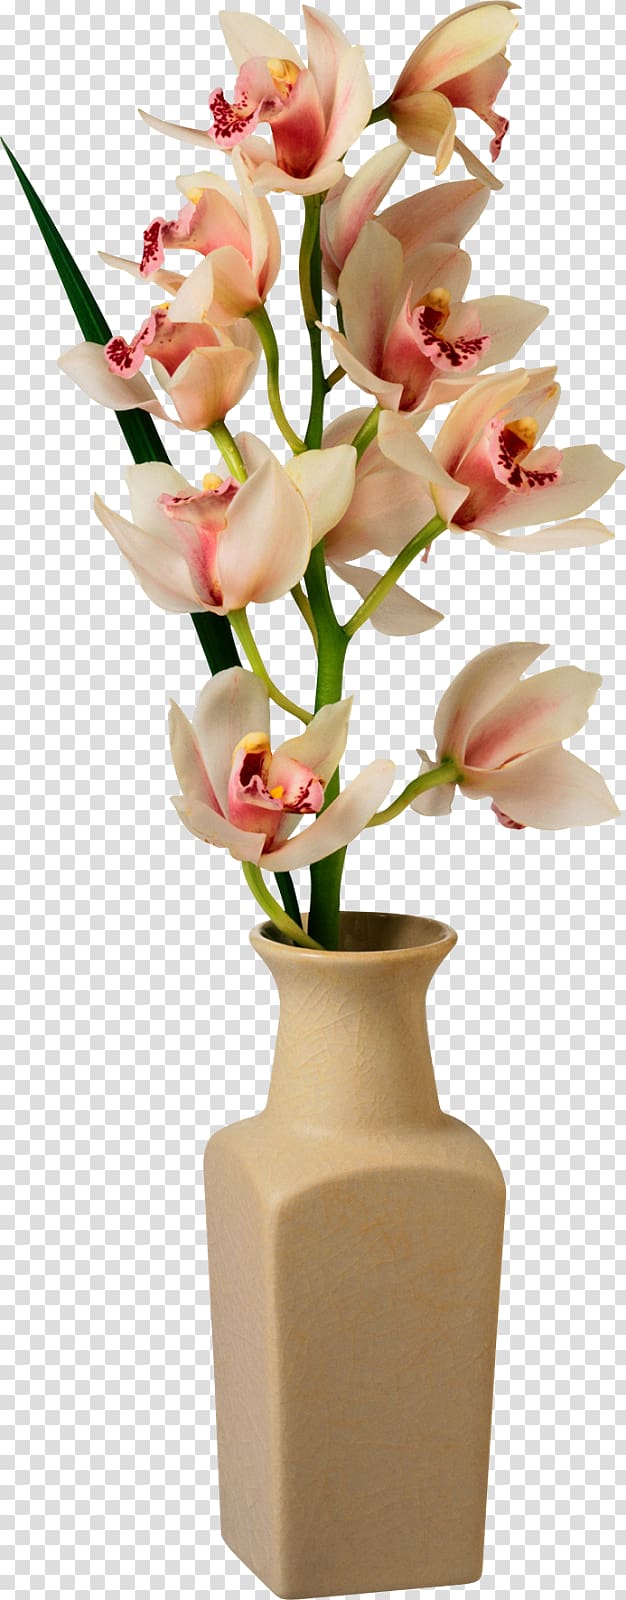 Vase Flower , flower pot transparent background PNG clipart